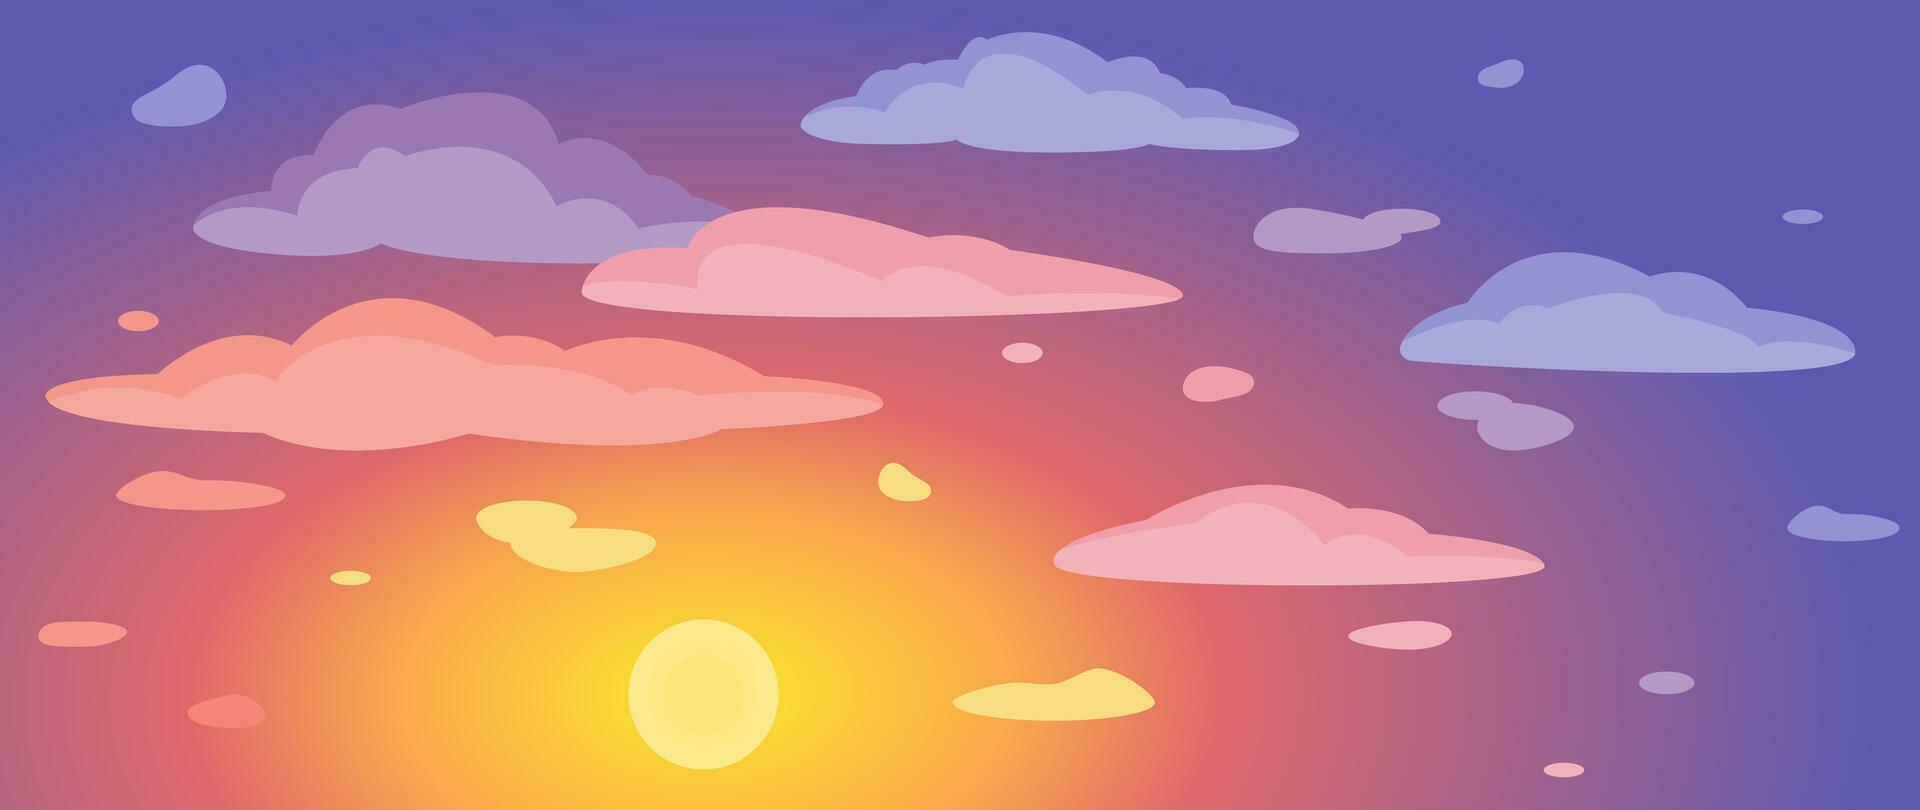 Contexte de le soir ciel, le coucher du soleil et des nuages. vecteur illustration pour couverture, bannière, affiche, la toile et emballage.